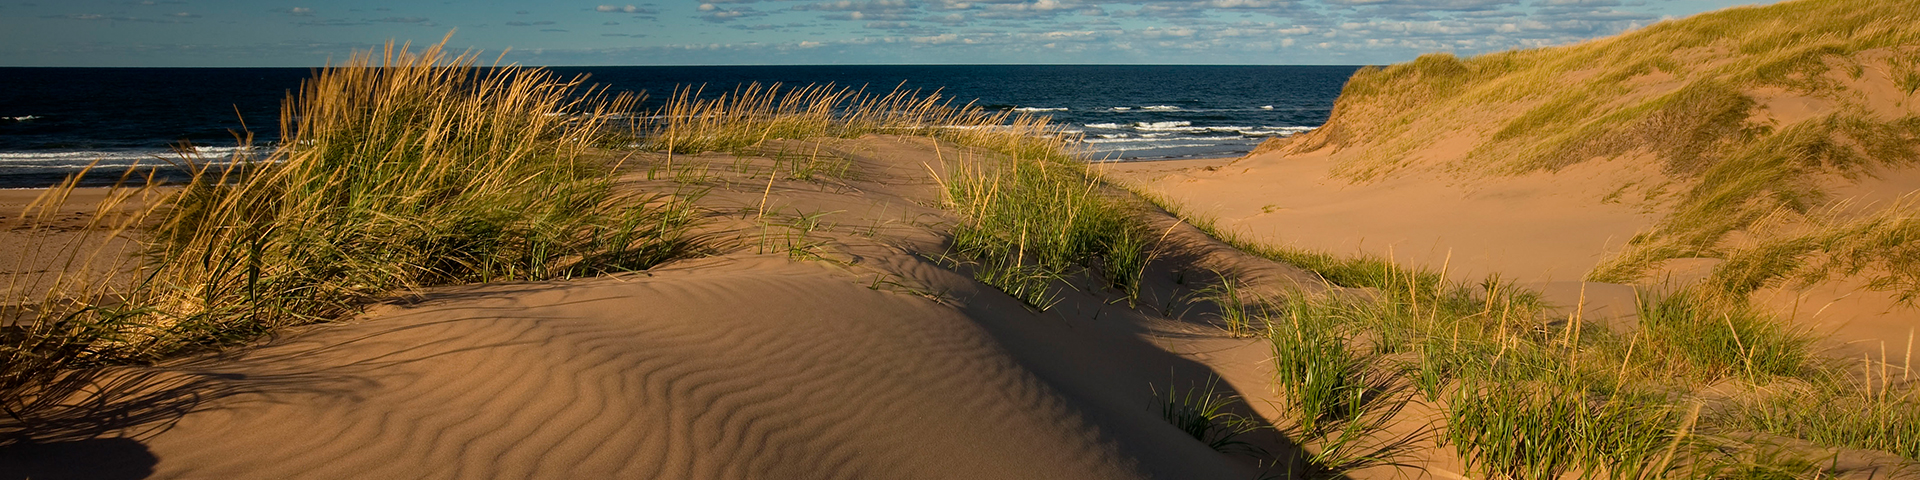 dunes de sable sur la plage